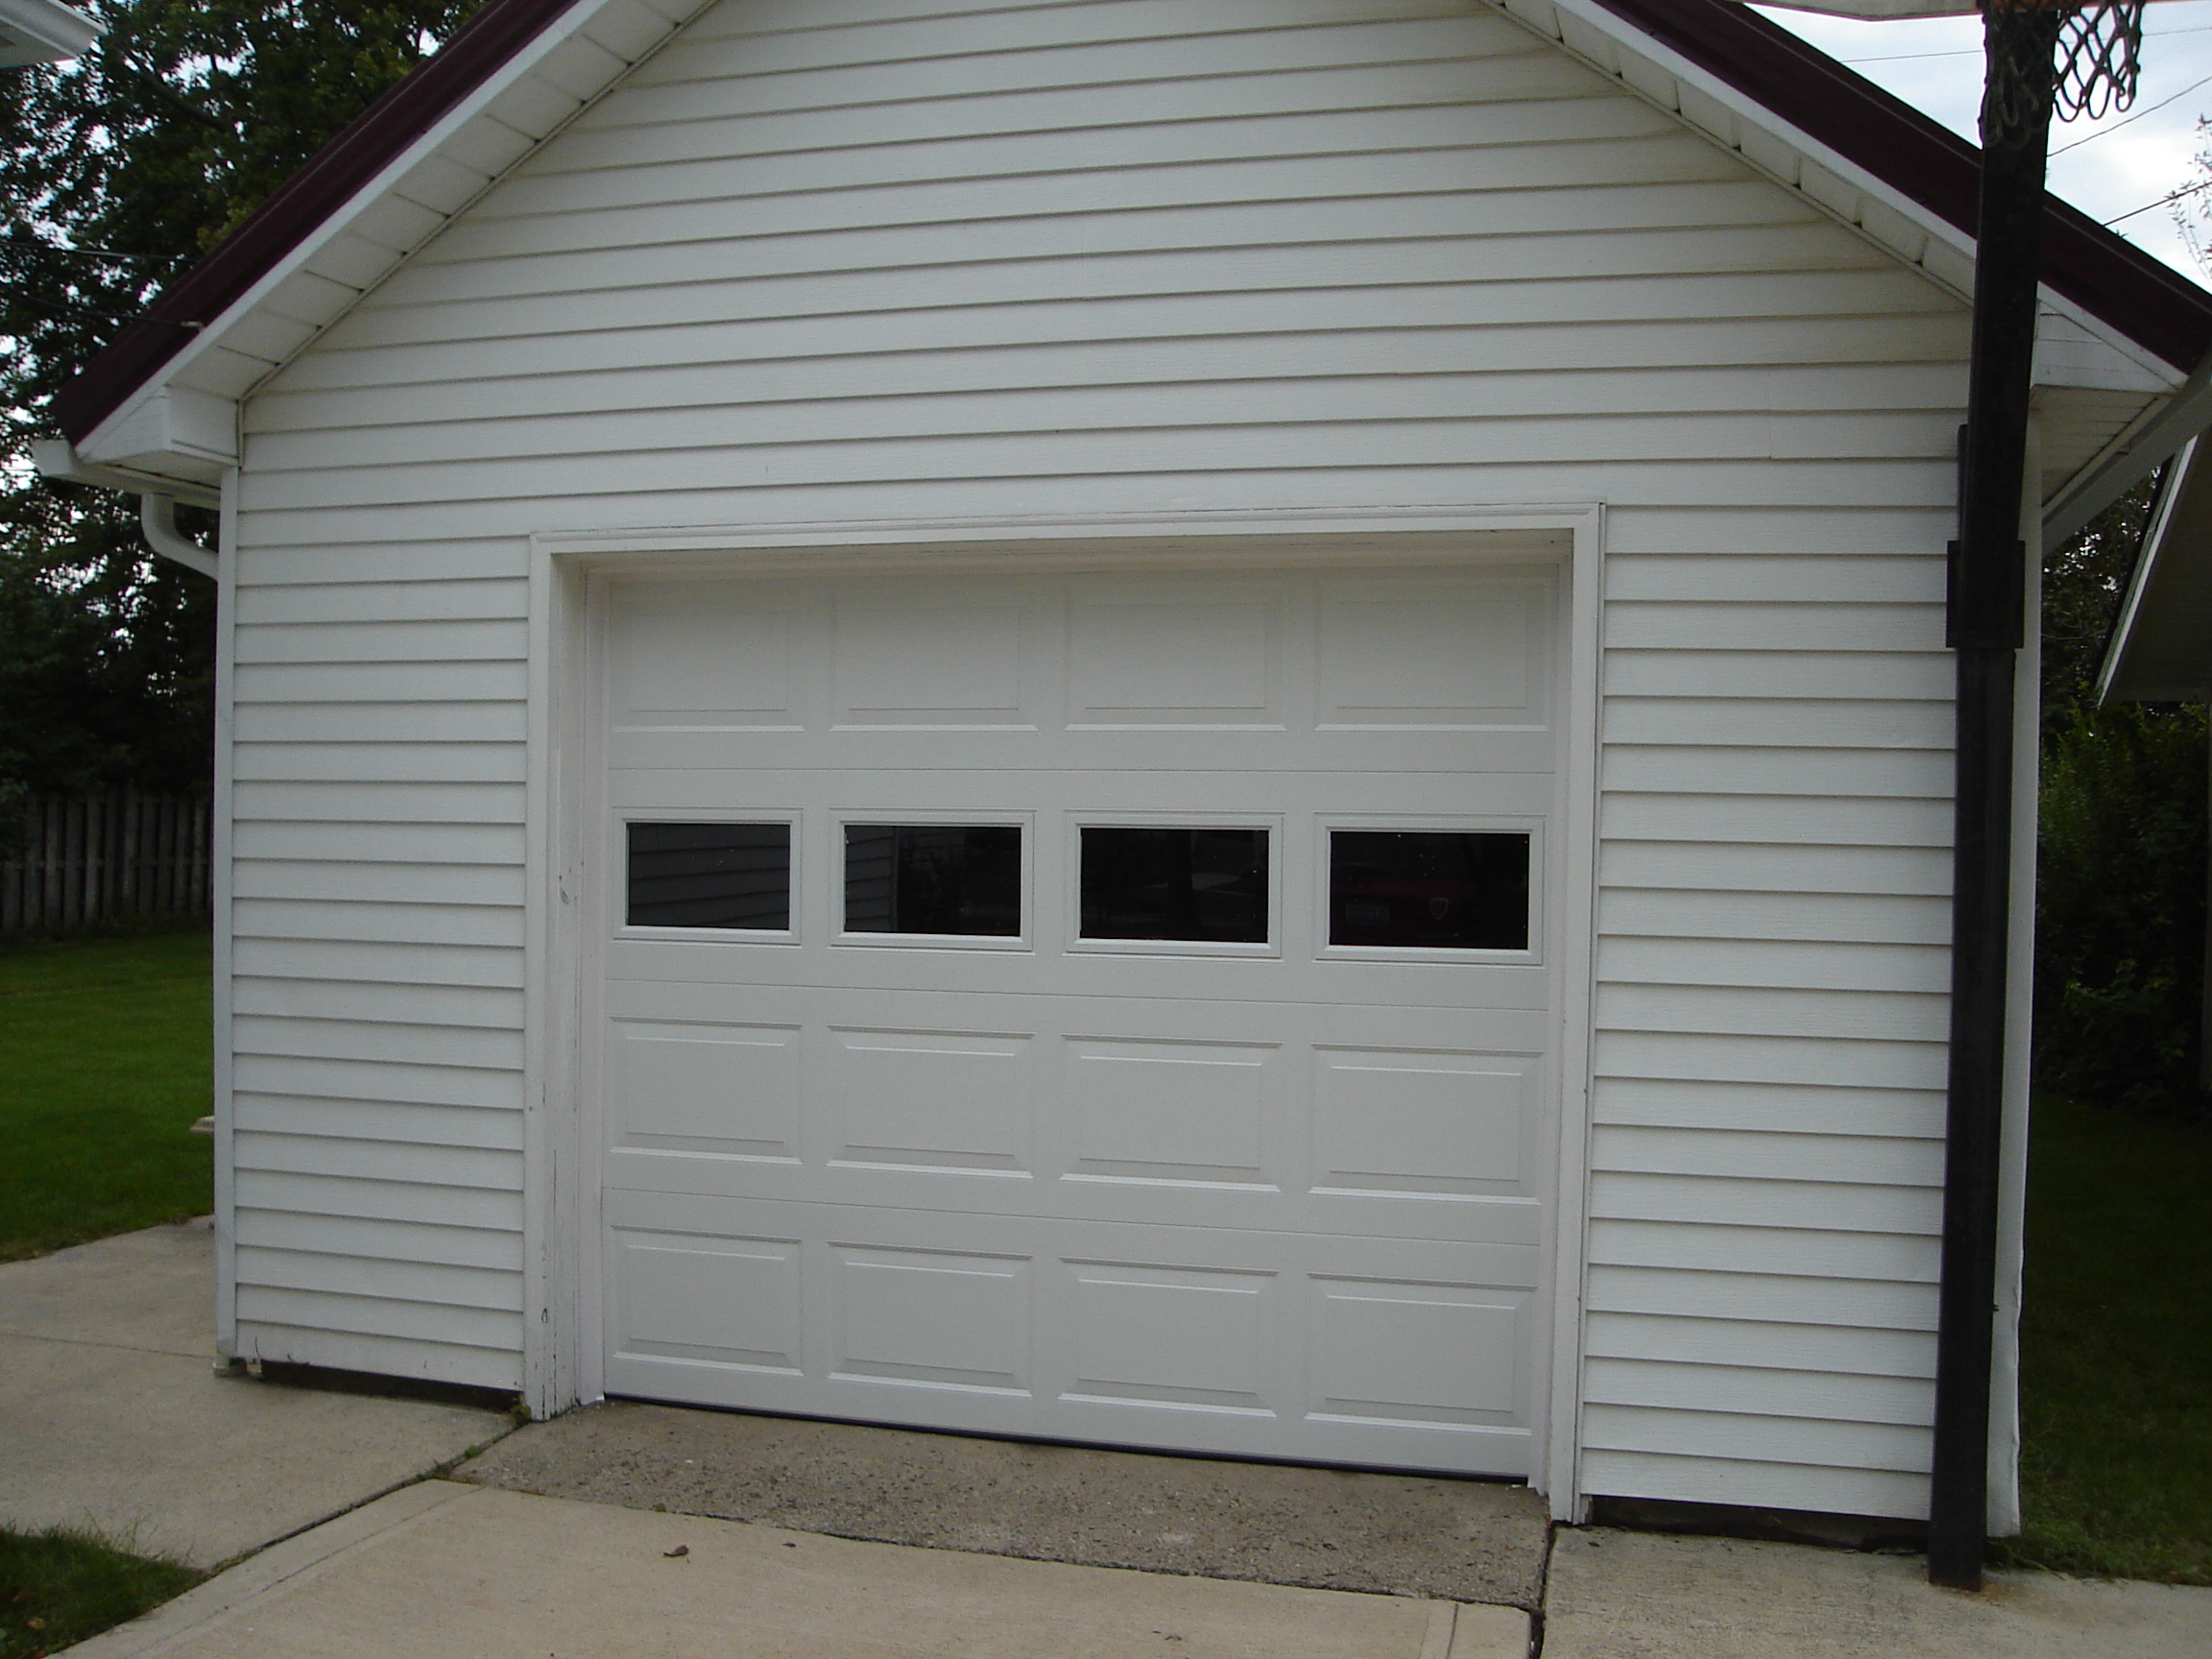 Garage Door Replacement Panels Home Depot Picture